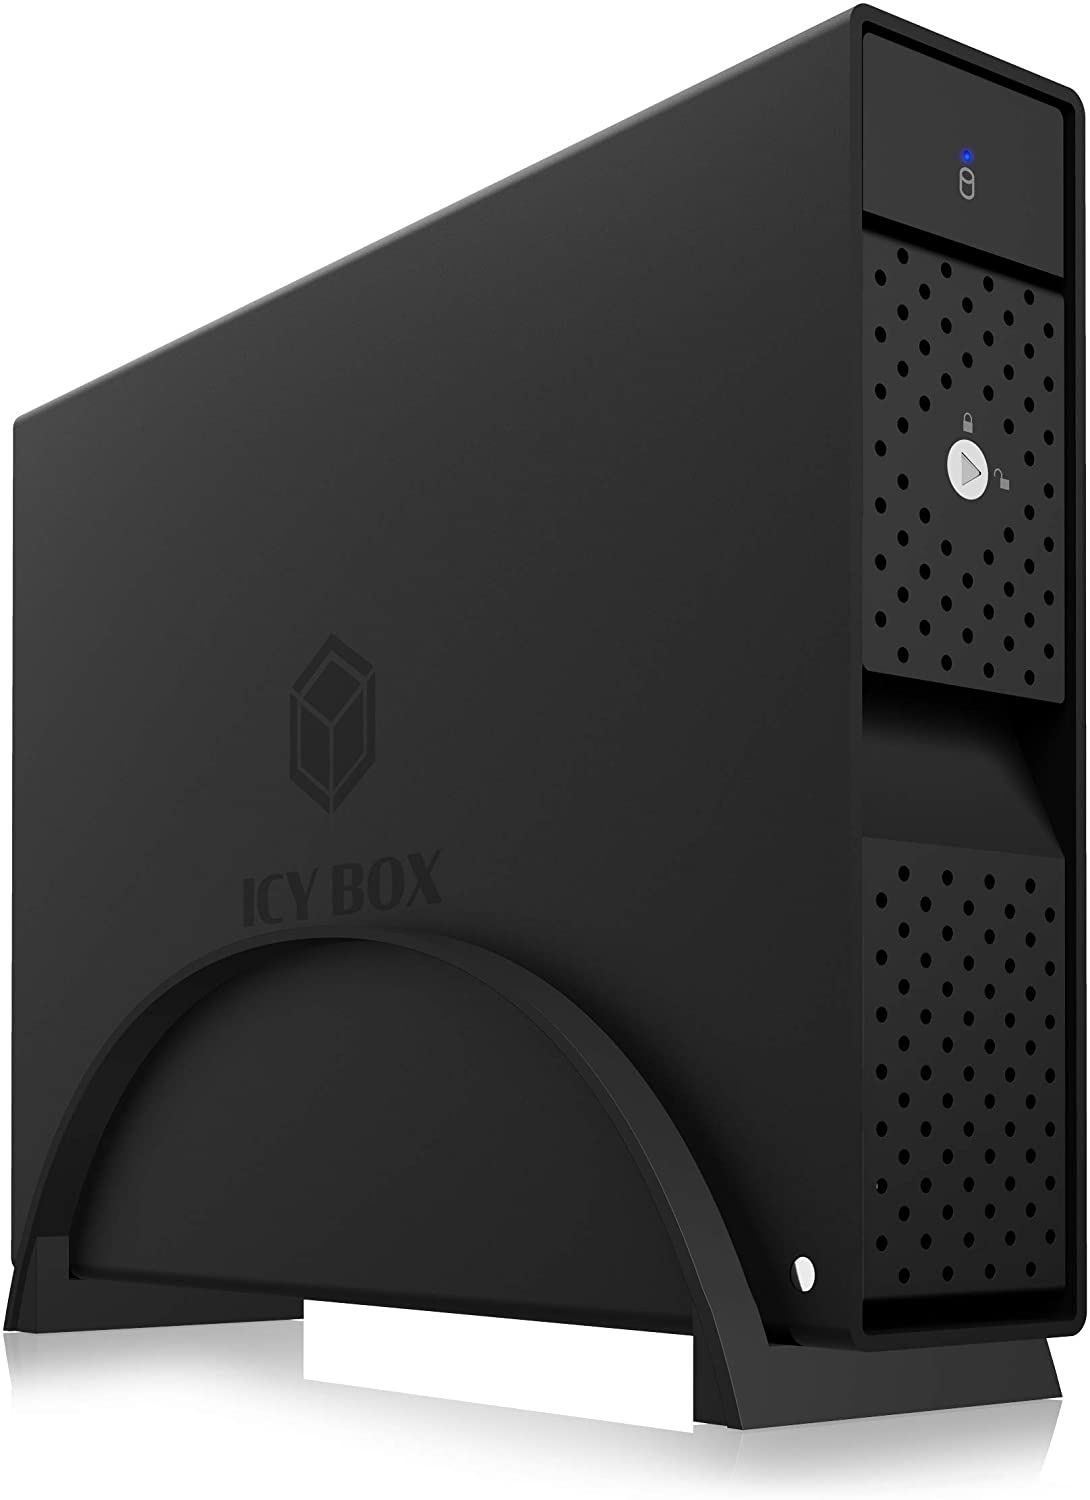 ICY BOX IB-3801-C31 Boîtier de Disque Dur USB-C 3,5" USB 3.1 Gen 2 (10 Gbit/s) Montage sans Outil Boîtier en Aluminium avec Pied Amovible Noir